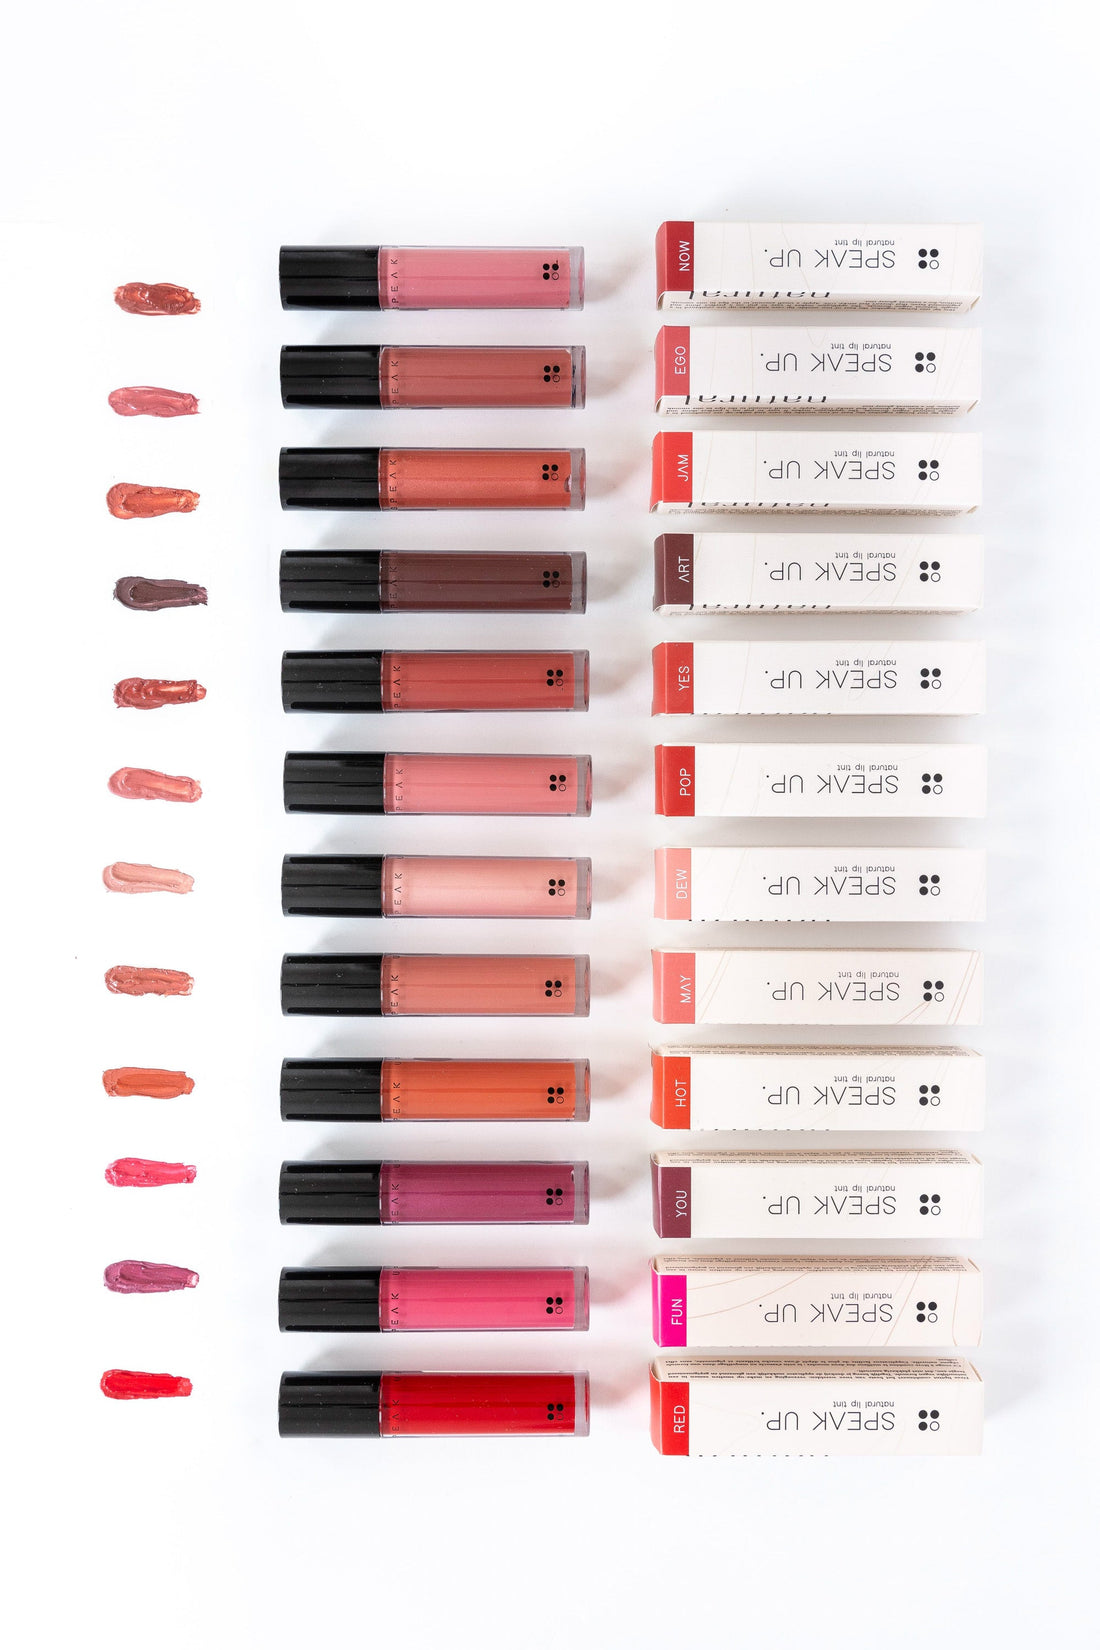 Een verscheidenheid aan Rainpharma Speak Up - Natural Lip Tints in meerdere tinten, gerangschikt naast de bijbehorende verpakking, weergegeven op een witte achtergrond.